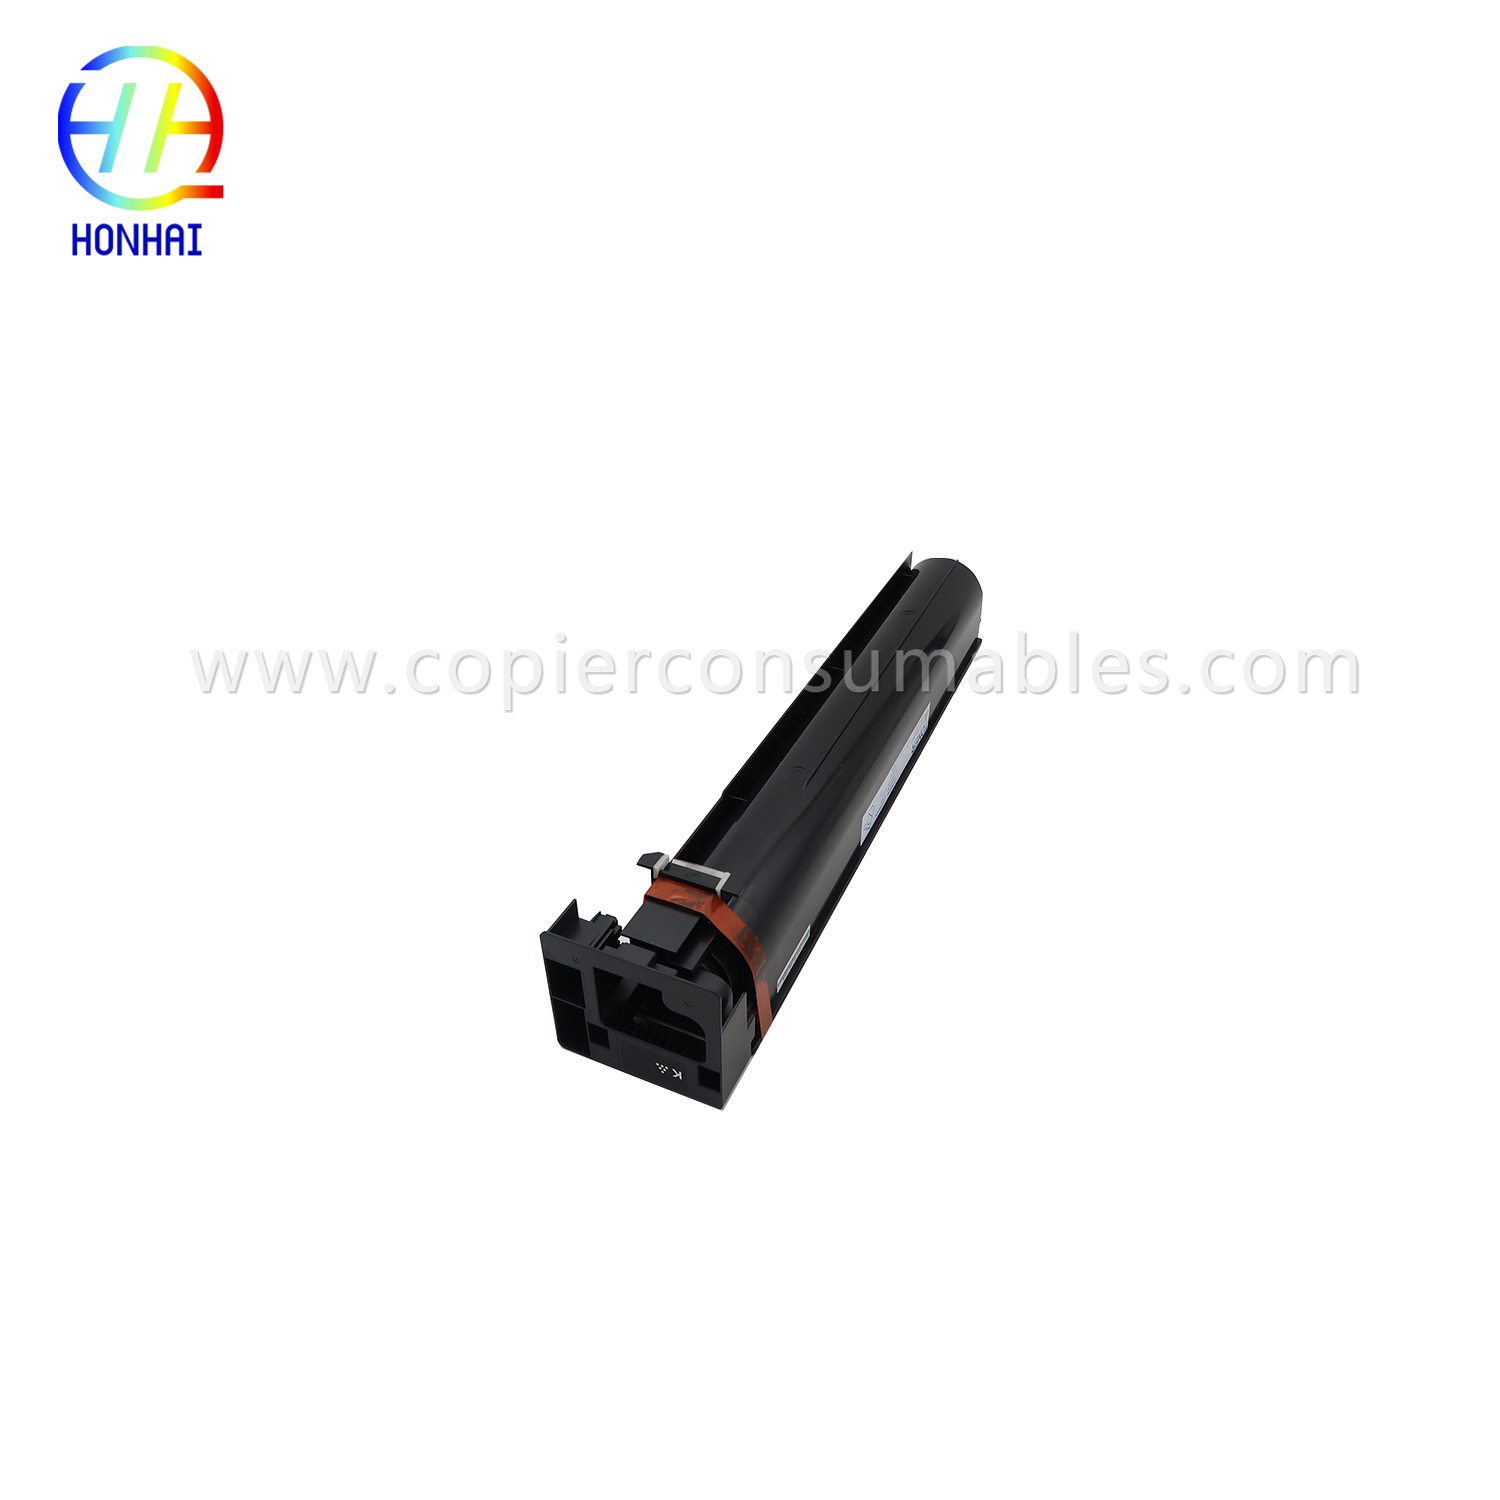 Toner Cartridge for Konica Minolta Bizhub 654 754 TN712 A3VU030